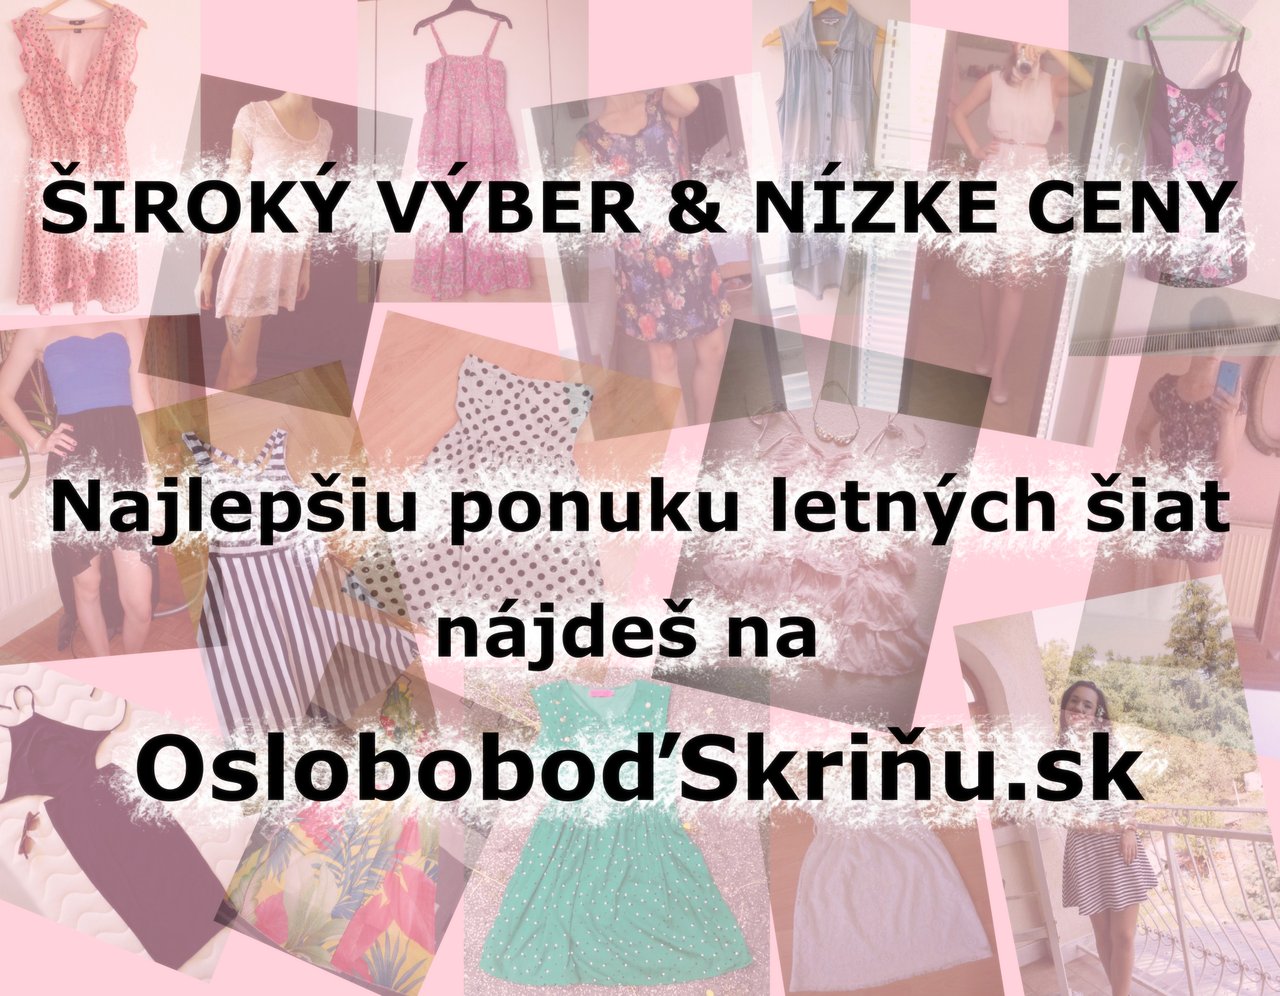 Pozri si výber na bazári oblečenia http://oslobodskrinu.sk/ ;-)